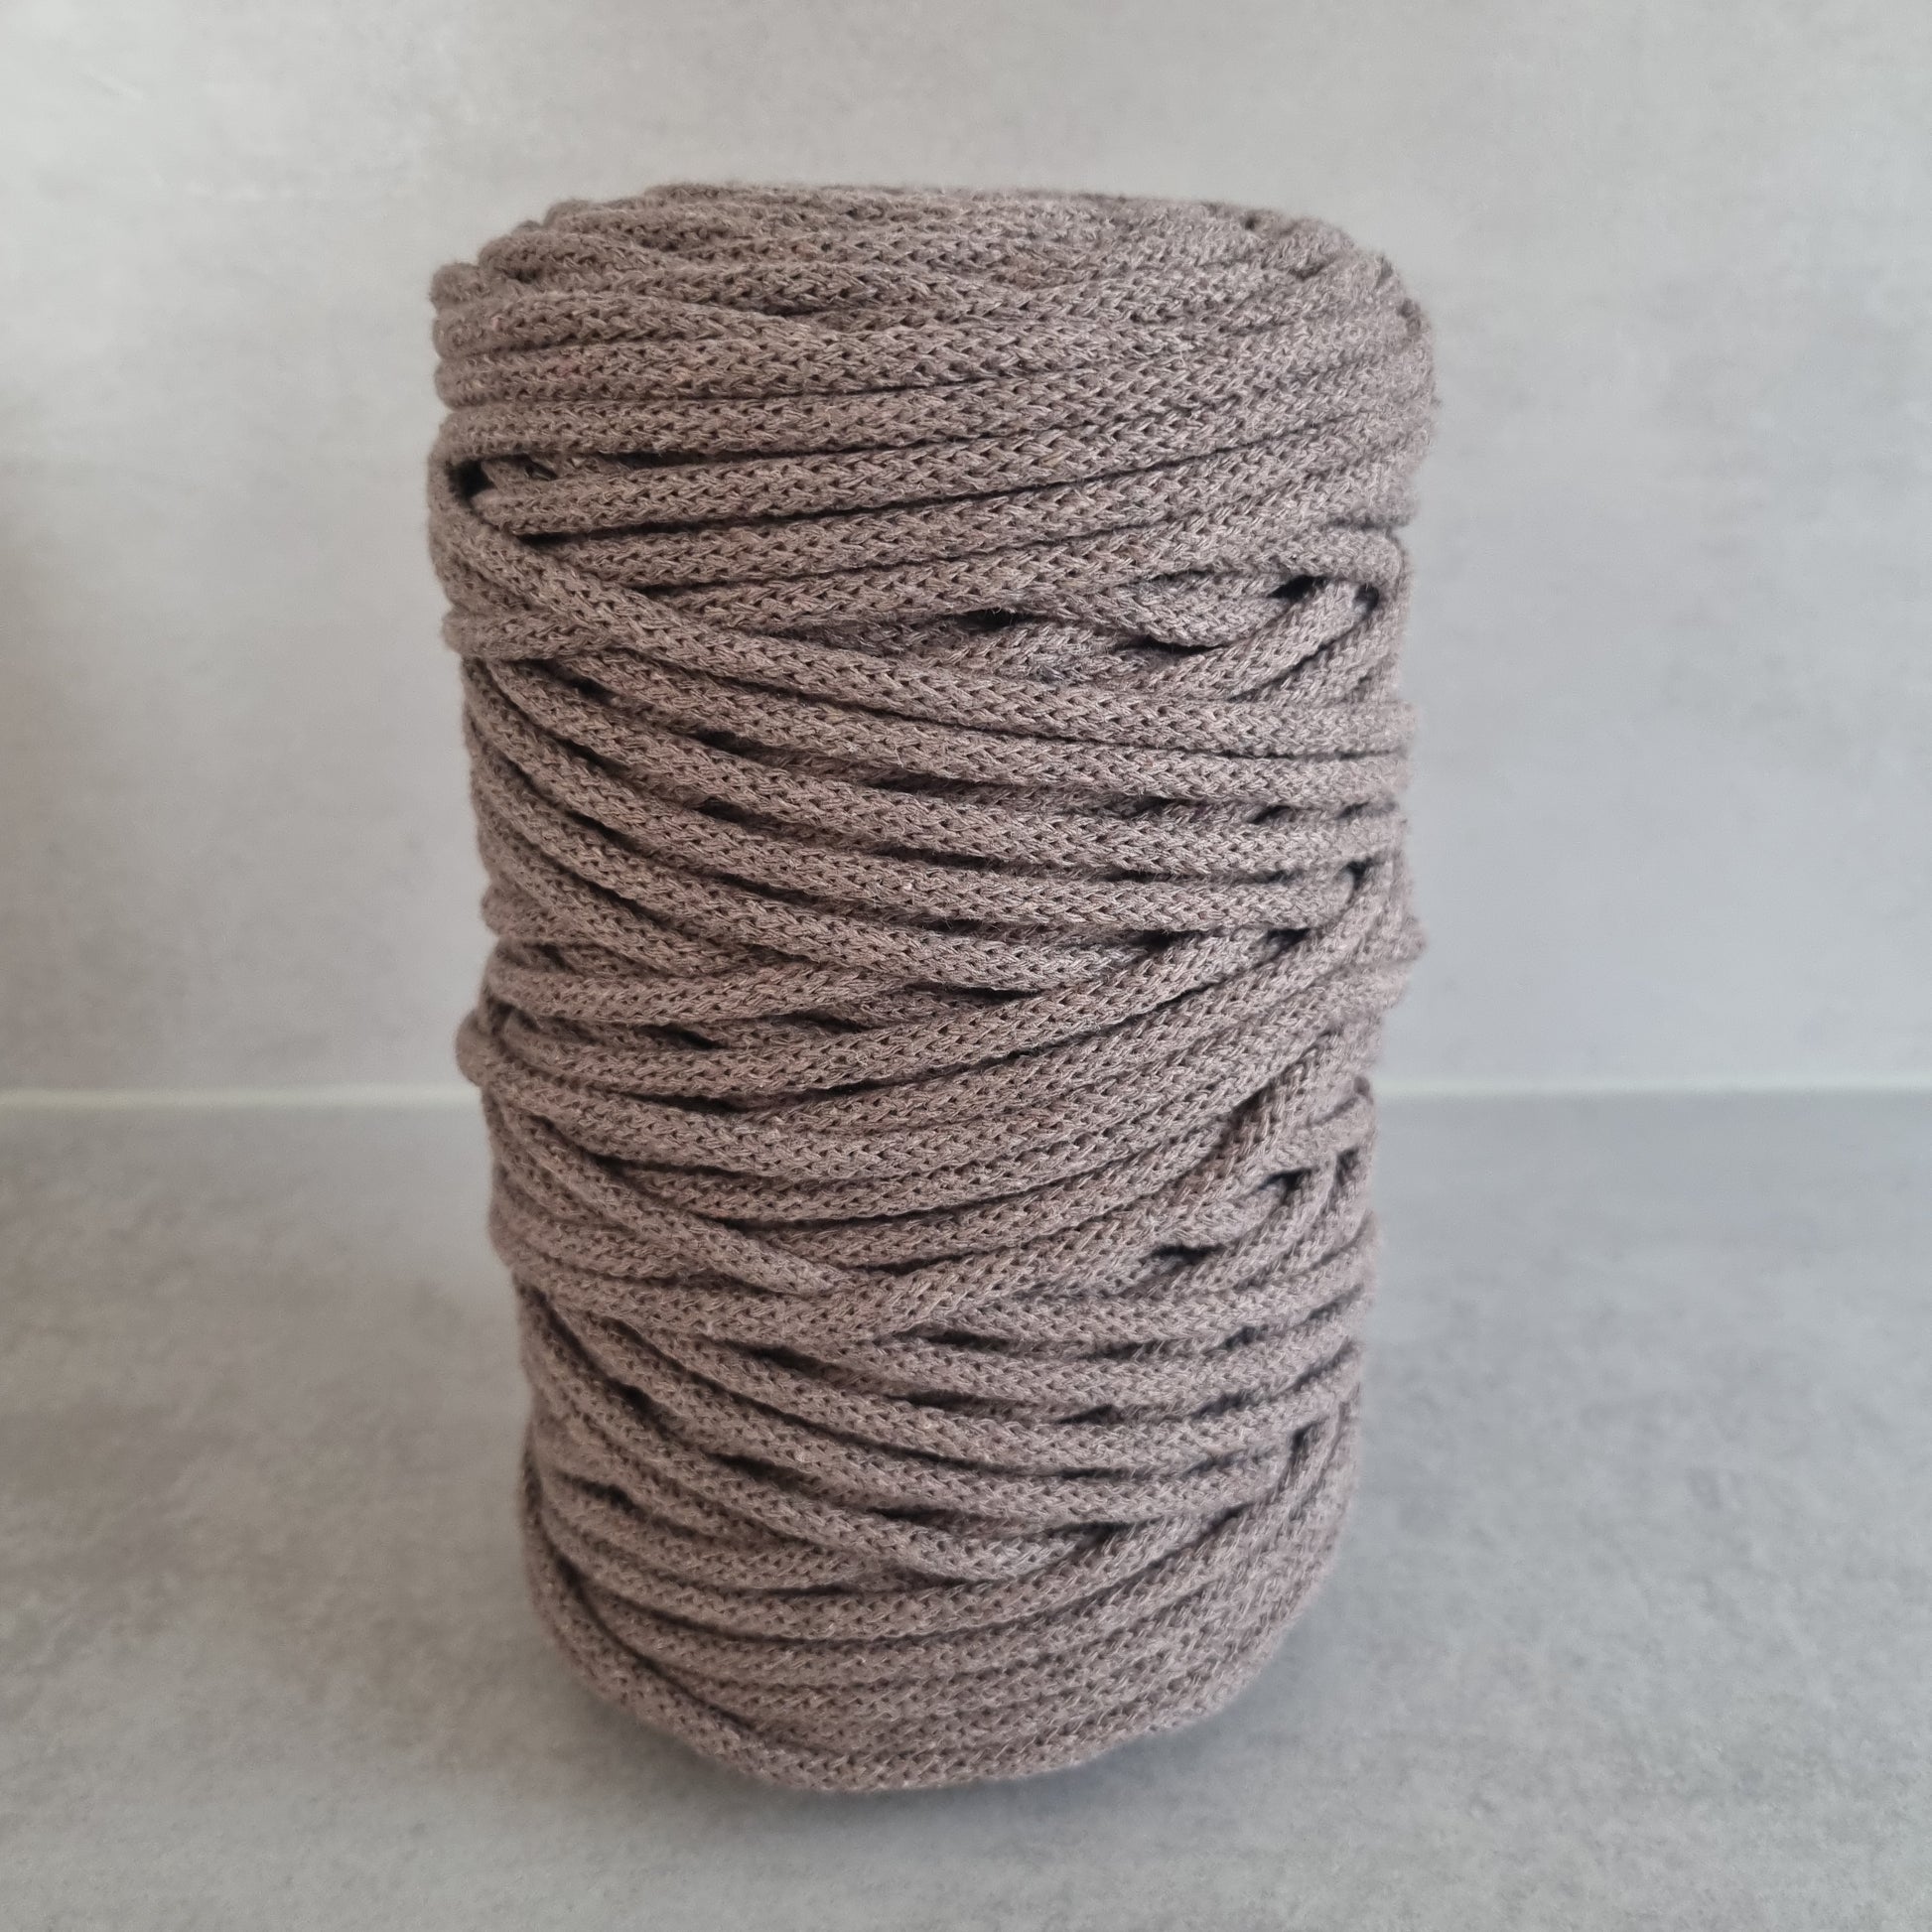 Cotton cord 6mm for crocheting, knitting and macrame – lenalovesknitting